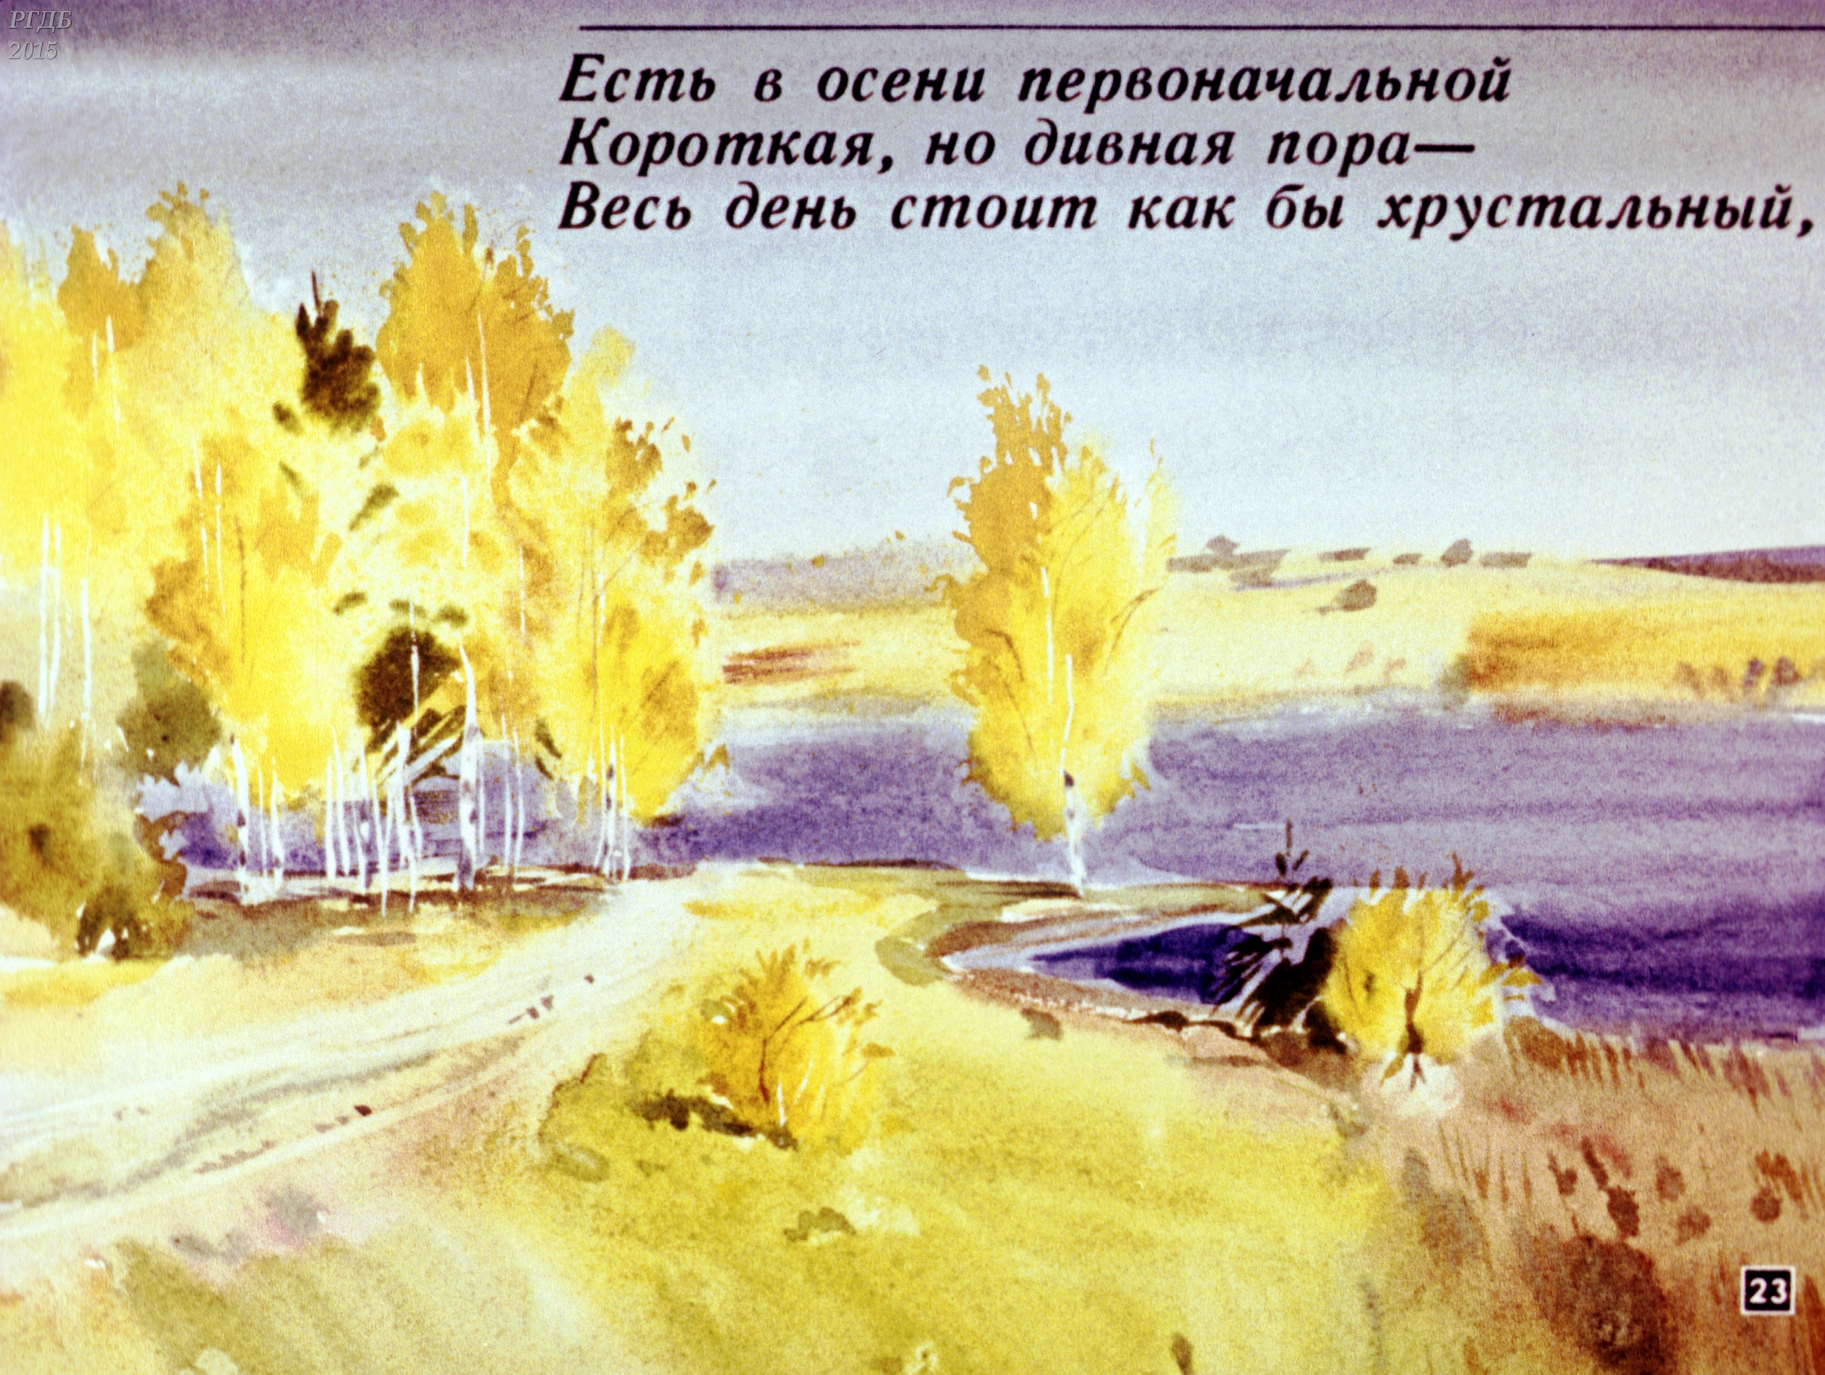 Иллюстрация к стихотворению Тютчева есть в осени первоначальной